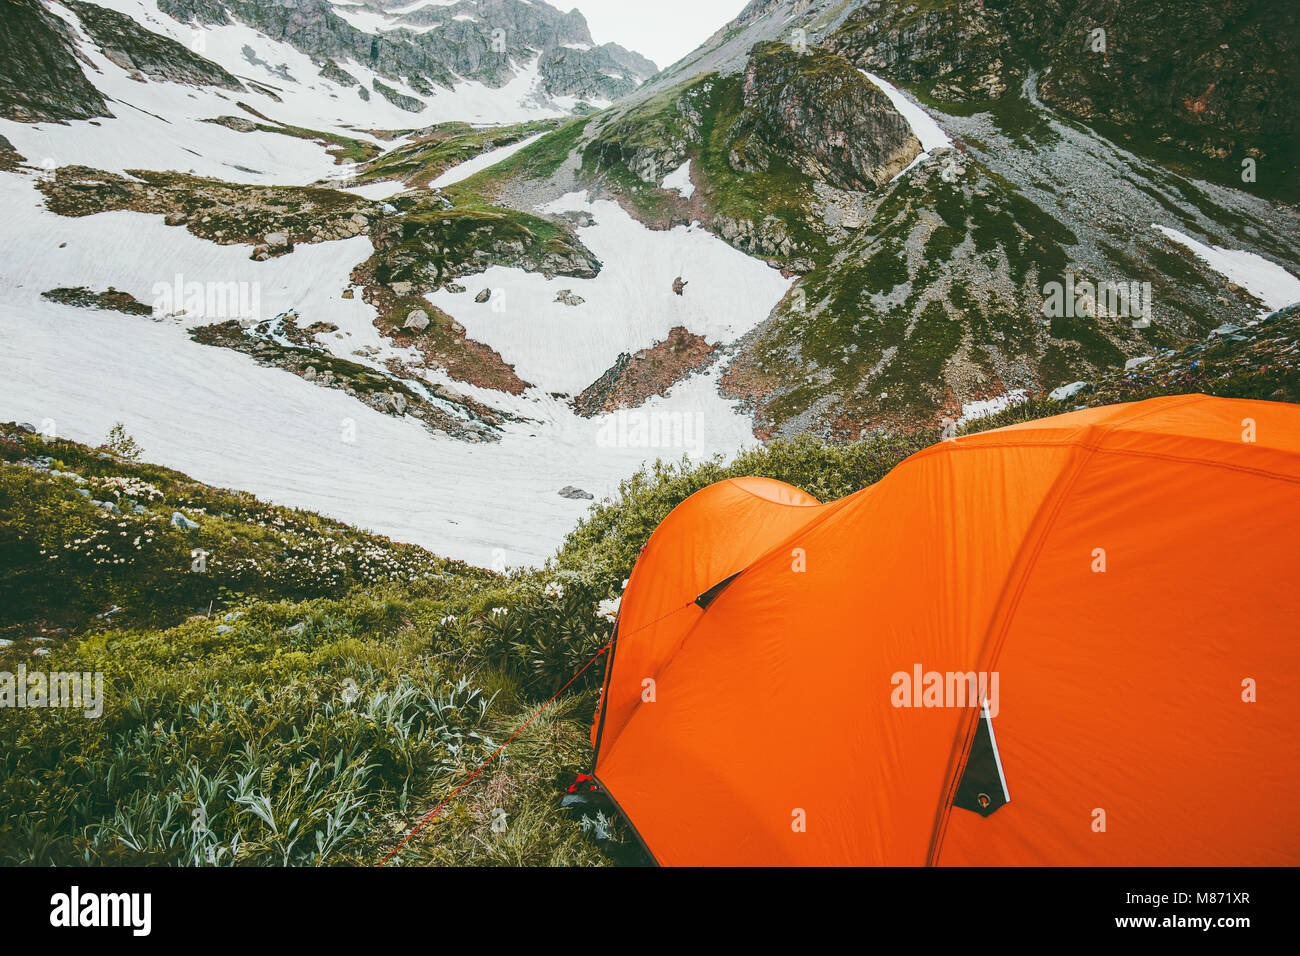 Camping zelt Biwak in Berge Landschaft Reisen überleben Lifestyle-konzept  Abenteuer Sommer Urlaub Outdoor Wanderausrüstung Ausrüstung Stockfotografie  - Alamy